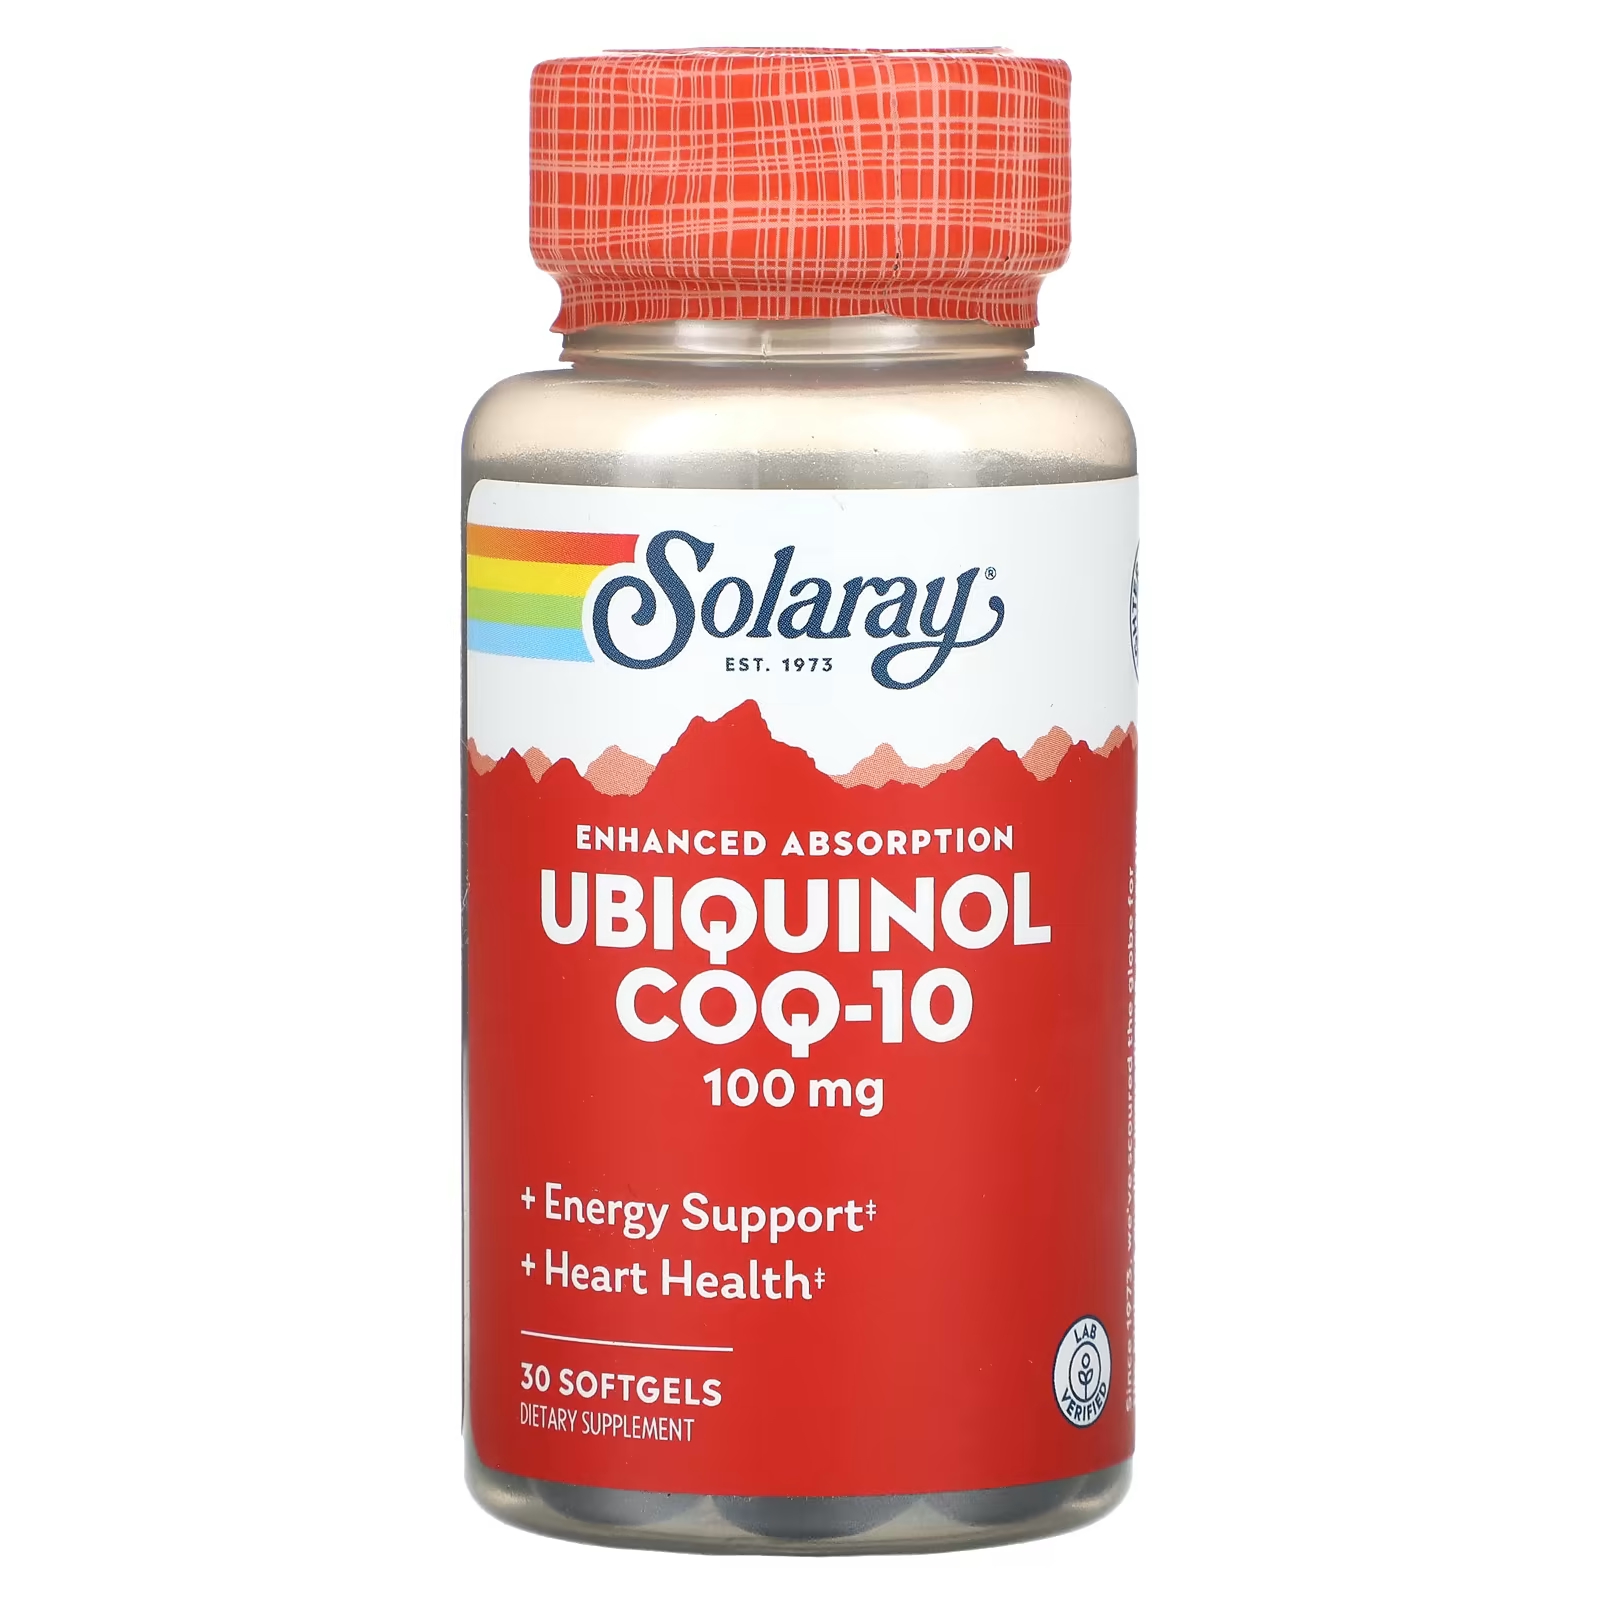 Solaray Убихинол CoQ10, улучшенная абсорбция, 100 мг, 30 мягких таблеток qunol убихинол mega coq10 100 мг 60 мягких таблеток